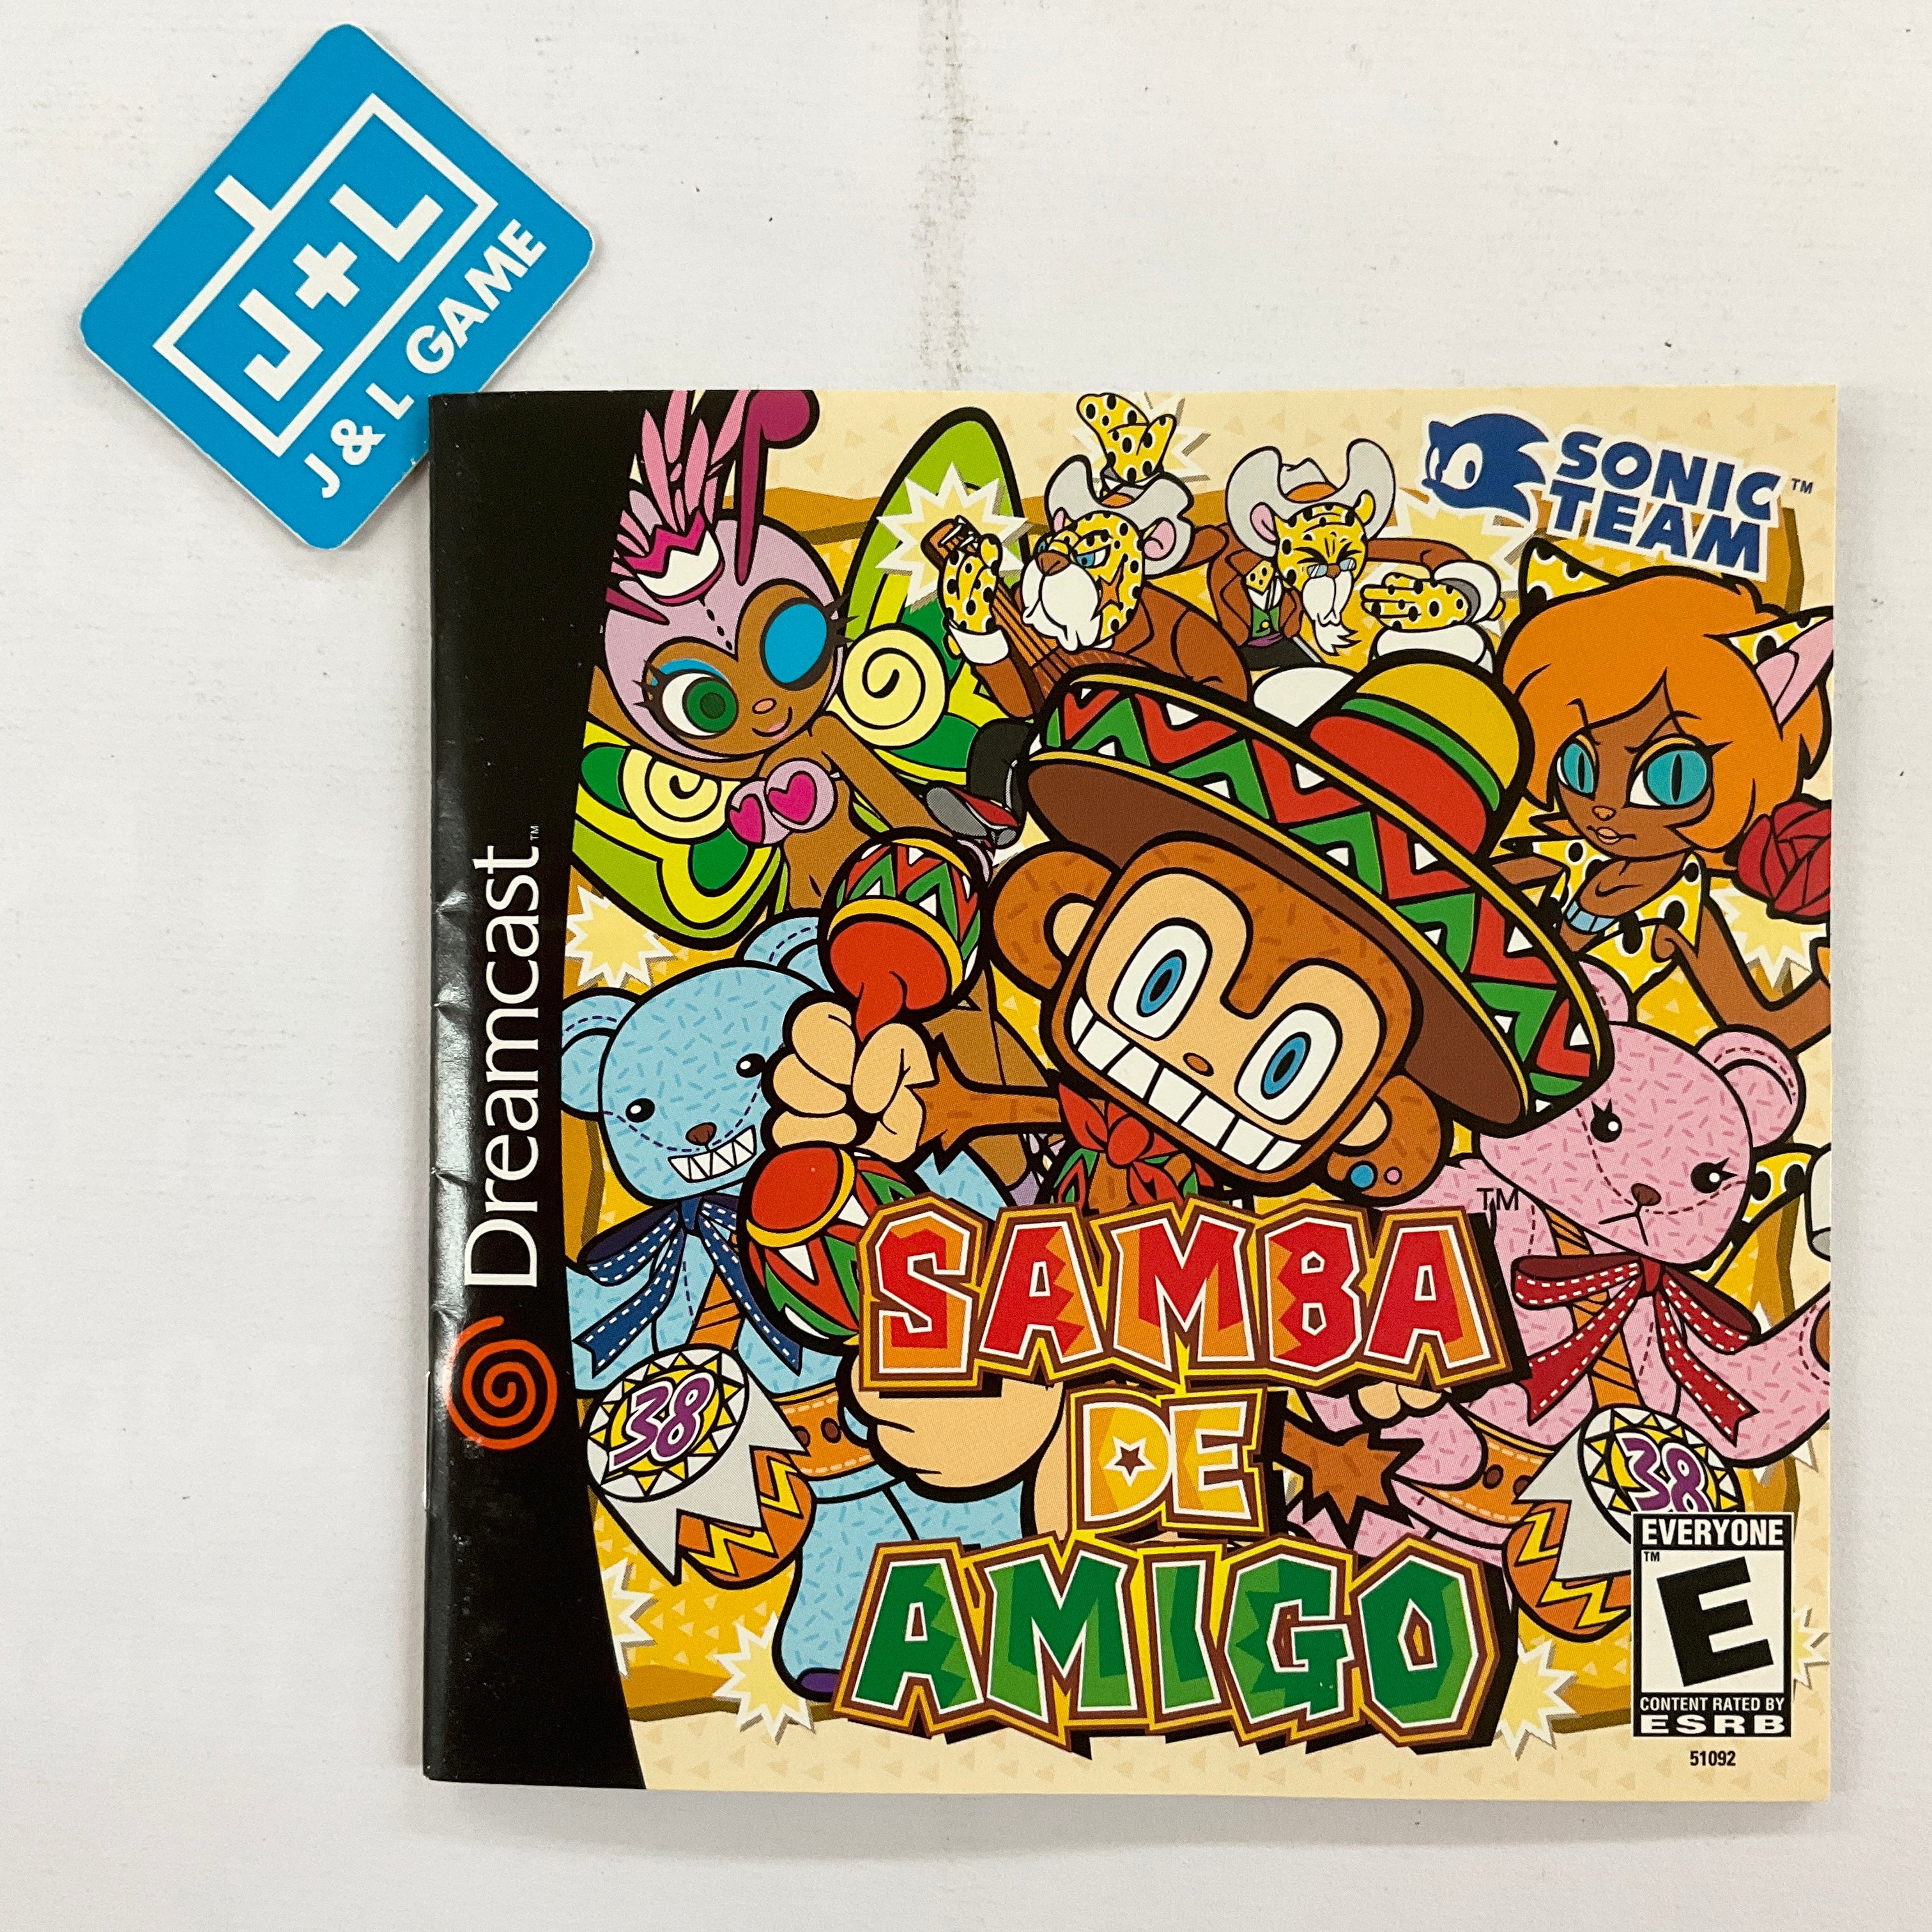 Samba de Amigo - (DC) SEGA Dreamcast  [Pre-Owned] Video Games Sega   